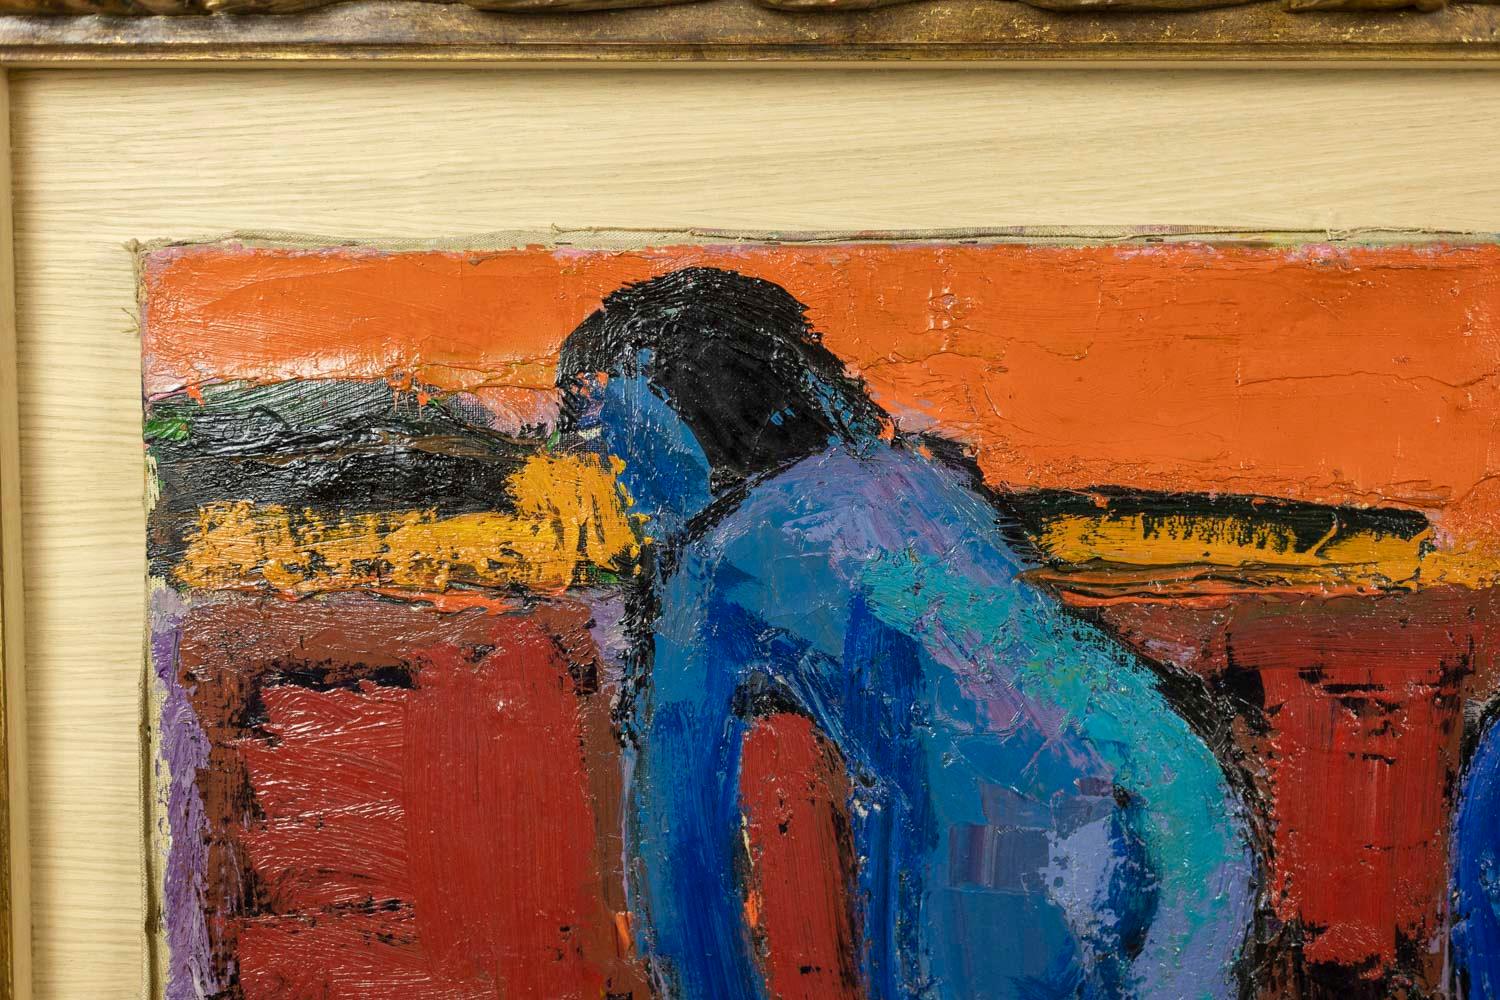 Pierre Ambrogiani, signé.

Huile sur toile représentant trois femmes bleues, sur un fond abstrait, dans son cadre en bois laqué et doré, provenant de la galerie Dina Vierny (a) Gallery.

Travail français réalisé dans les années 1970.

Dimensions : H